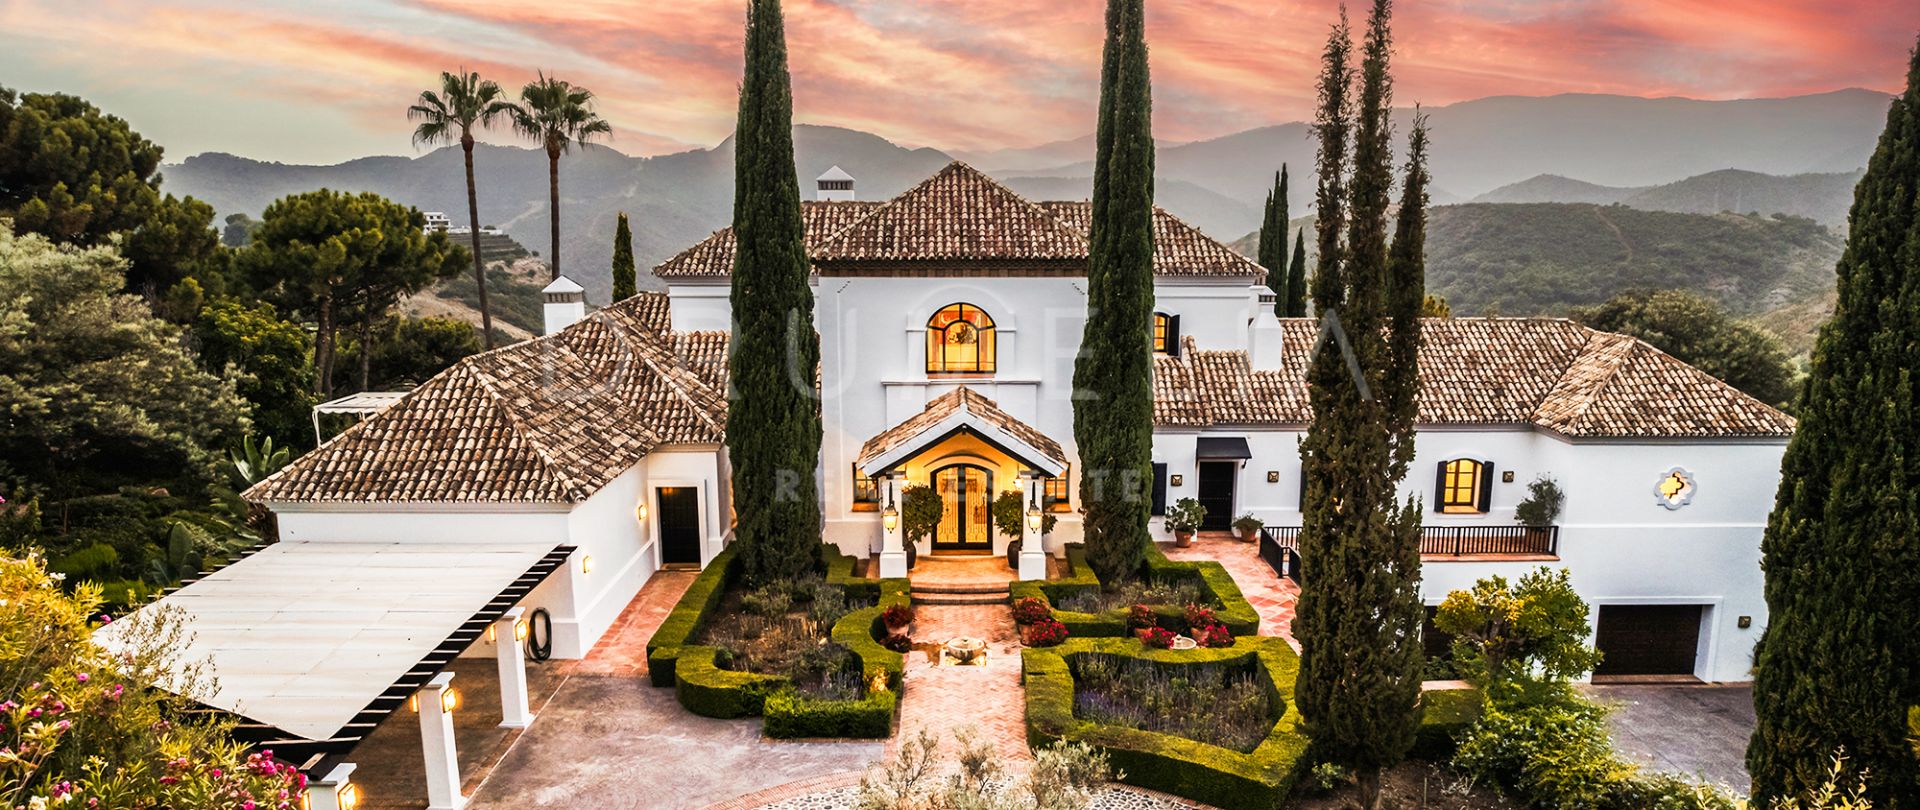 Casa Terregles - Lyxig herrgård med andalusisk charm och panoramautsikt i La Zagaleta, Benahavis